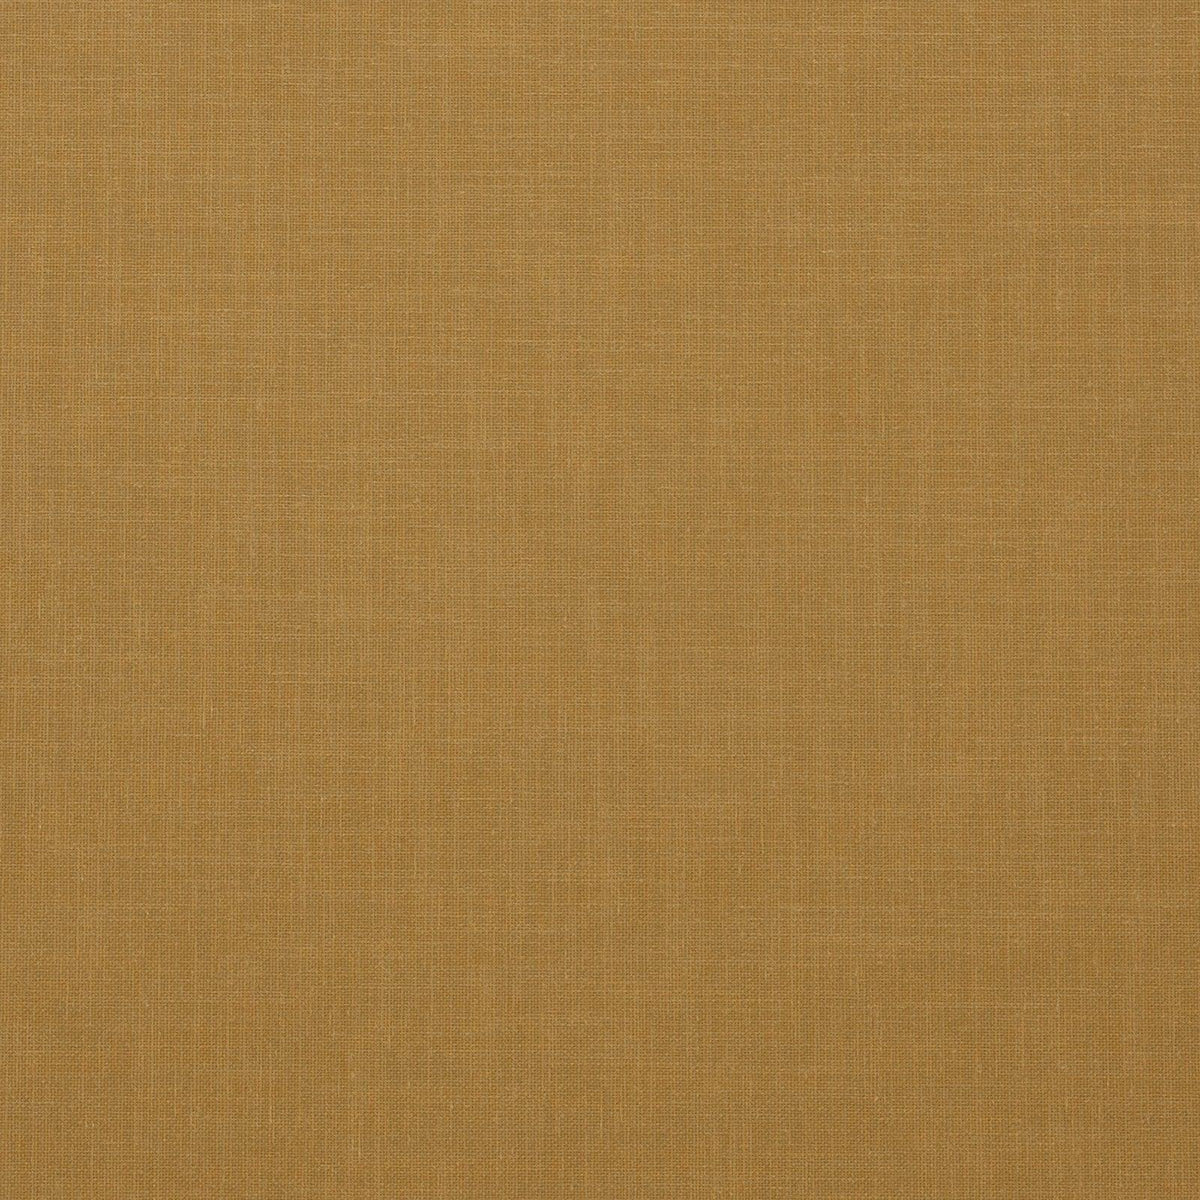 Berber-Gold - Atlanta Fabrics